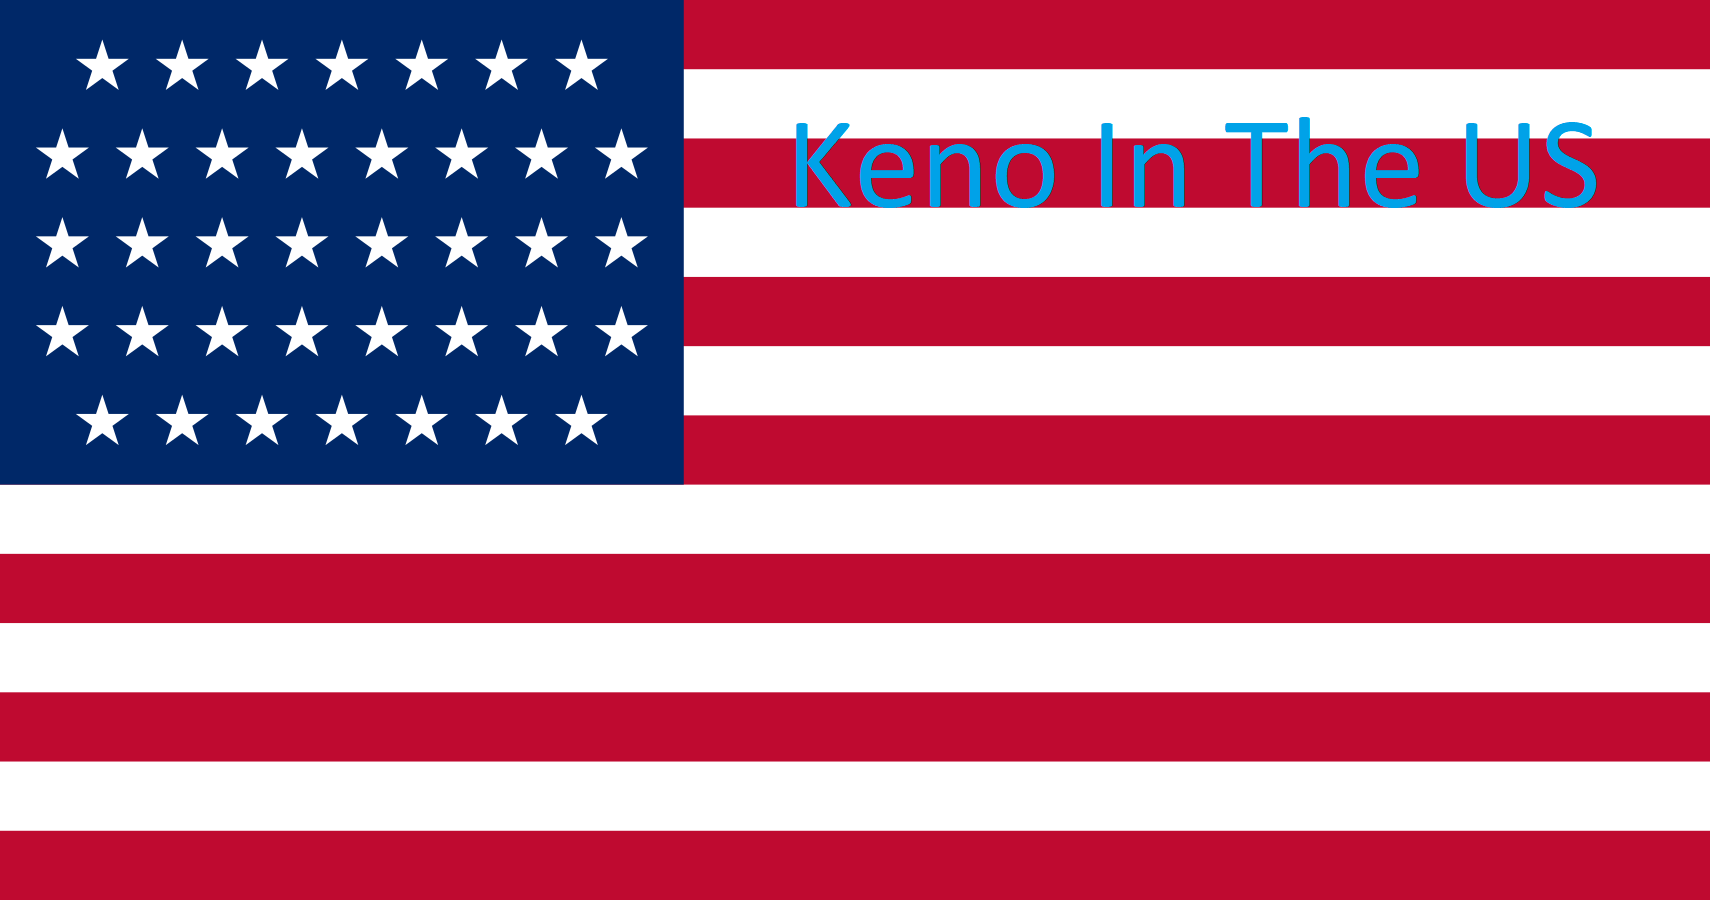 USA flag_keno